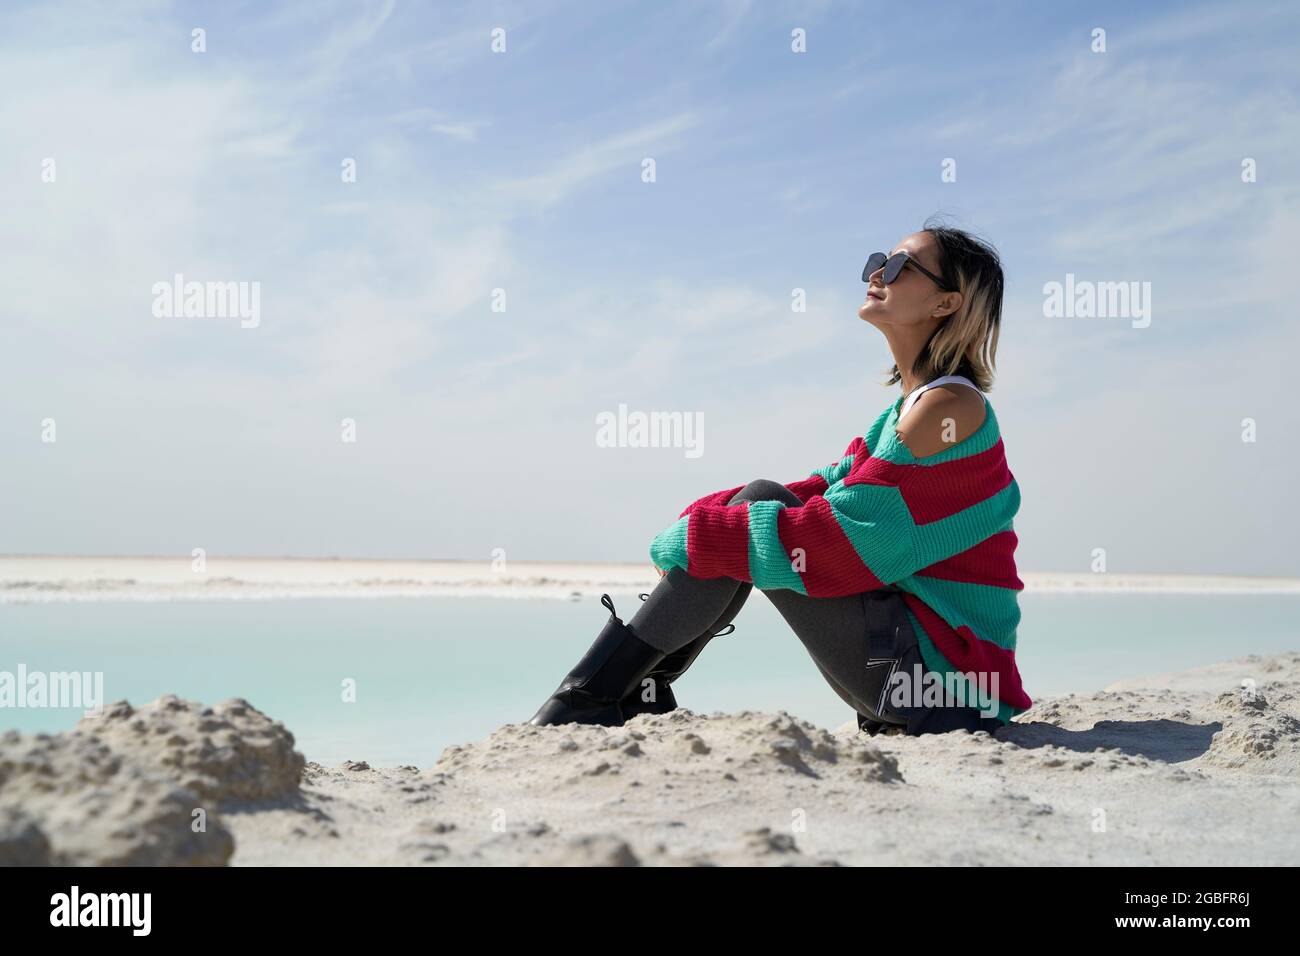 vue latérale de la femme asiatique touriste assis près d'un lac salé vue sur la vue Banque D'Images